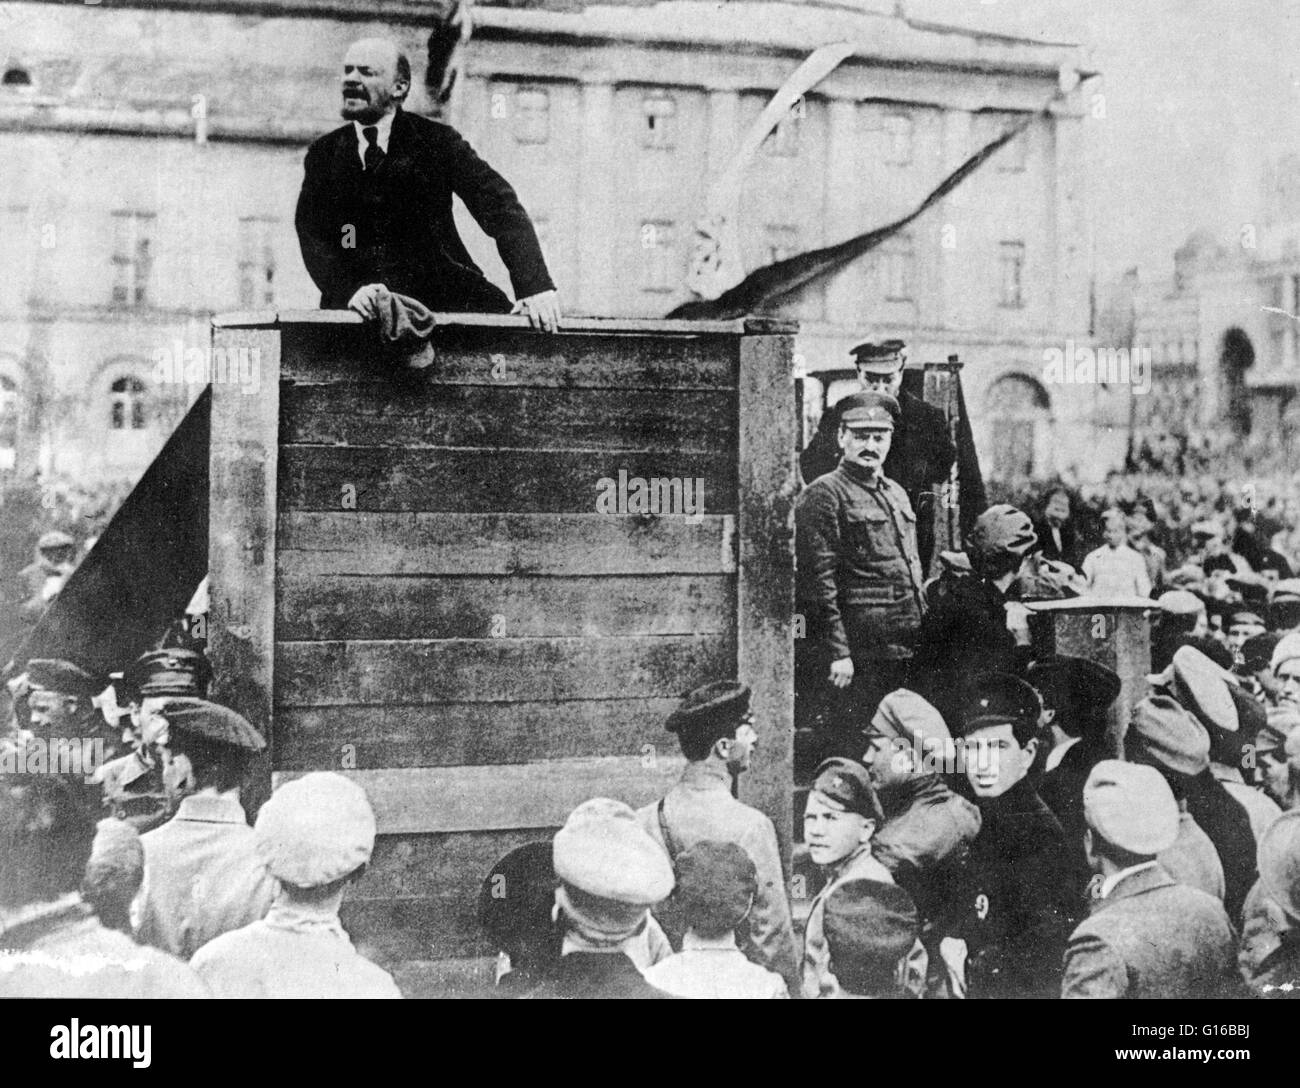 Lenin, die Adressierung von russischer Soldaten der polnischeArmee, Petrograd, Russland, 1920 kämpfen. Leon Trotsky und Lev Borisovich Kamenev stehen auf der rechten Seite. Vladimir Ilyich Lenin (22. April 1870 - 21. Januar 1924) war eine russische marxistische revolutionäre, kommunistischen pol Stockfoto